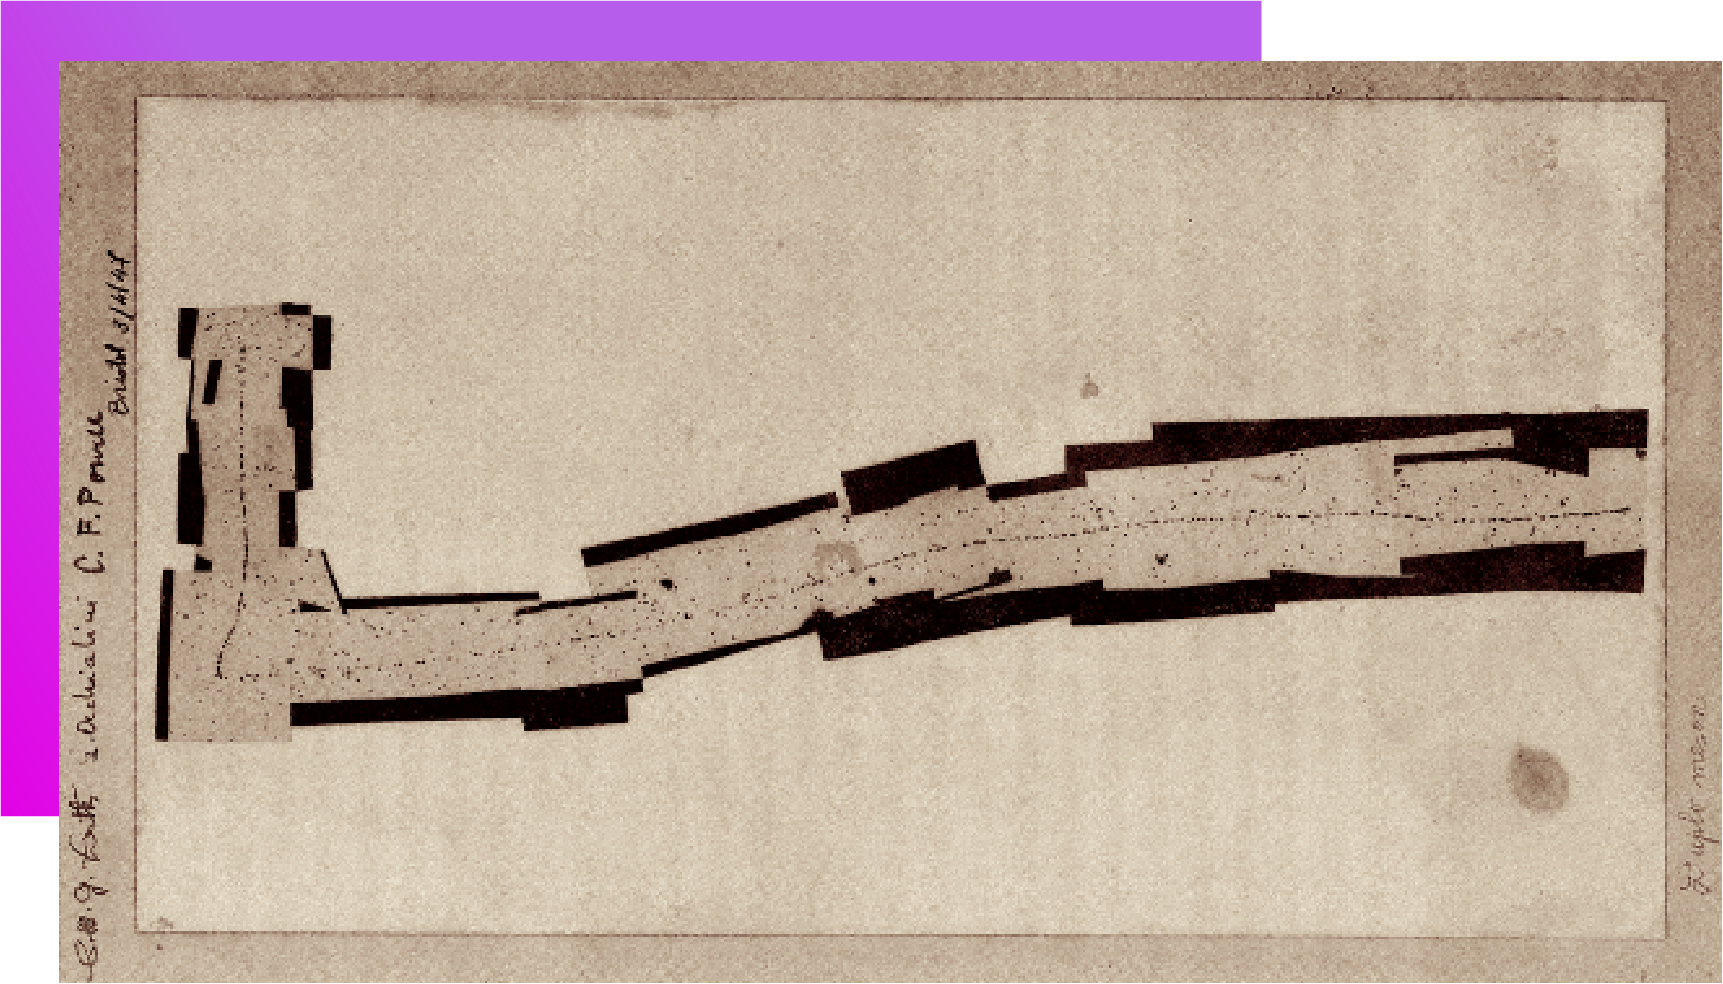 Emulsão nuclear marcada pela trajetória de um méson pi (tracejado curto vertival) desintegrando-se em um múon (tracejado longo horizontal). A imagem é uma composição de fotografias tiradas com o auxílio de um microscópio. À direita pode-se ver as assinaturas de Lattes, Occhialini e Powell, com data de 3 de abril de 1947, em Bristol.​